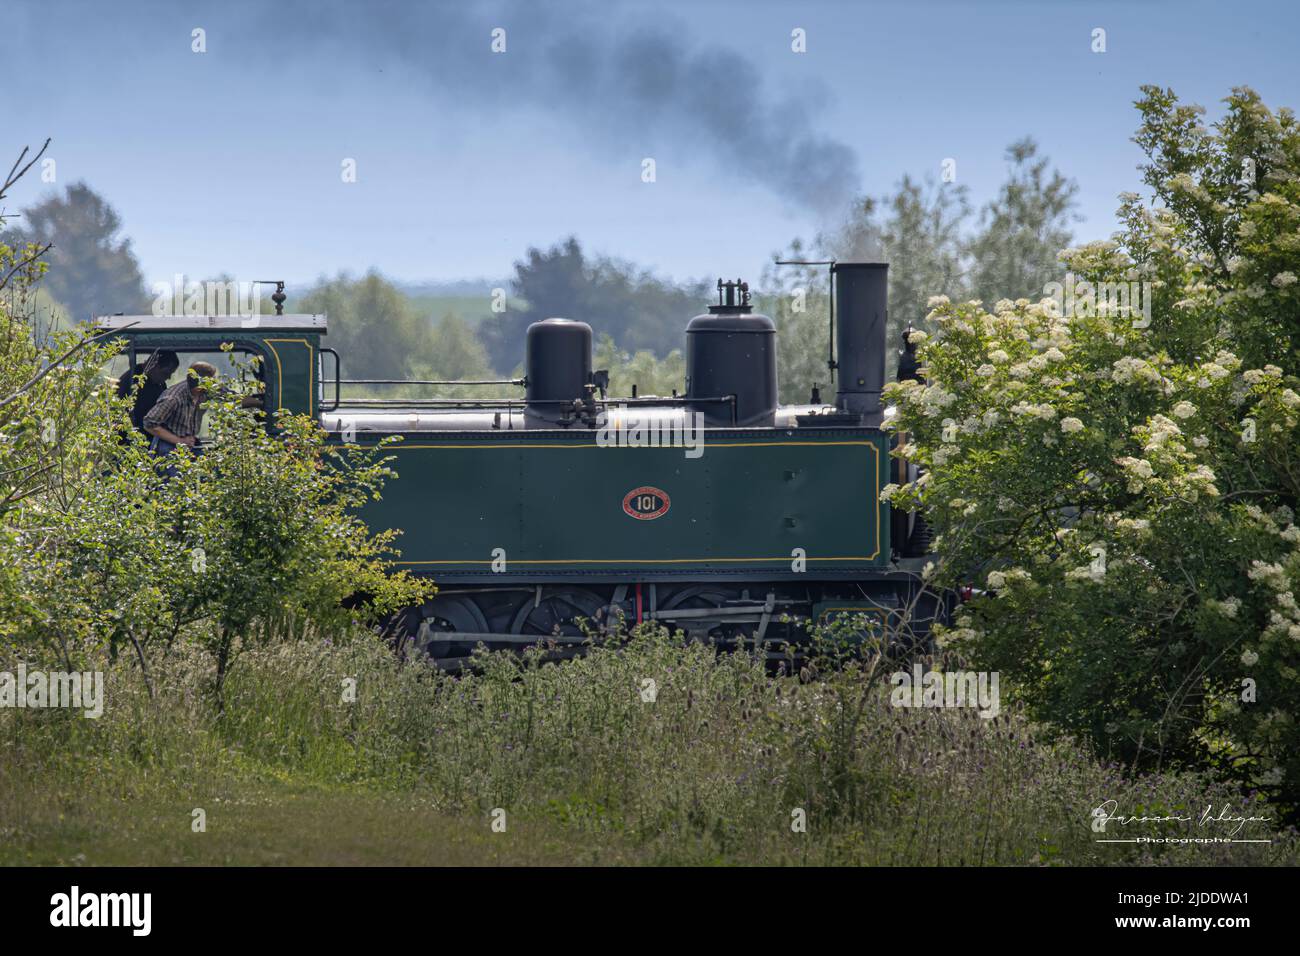 Train de la baie de Somme, locomotive à vapeur Stock Photo